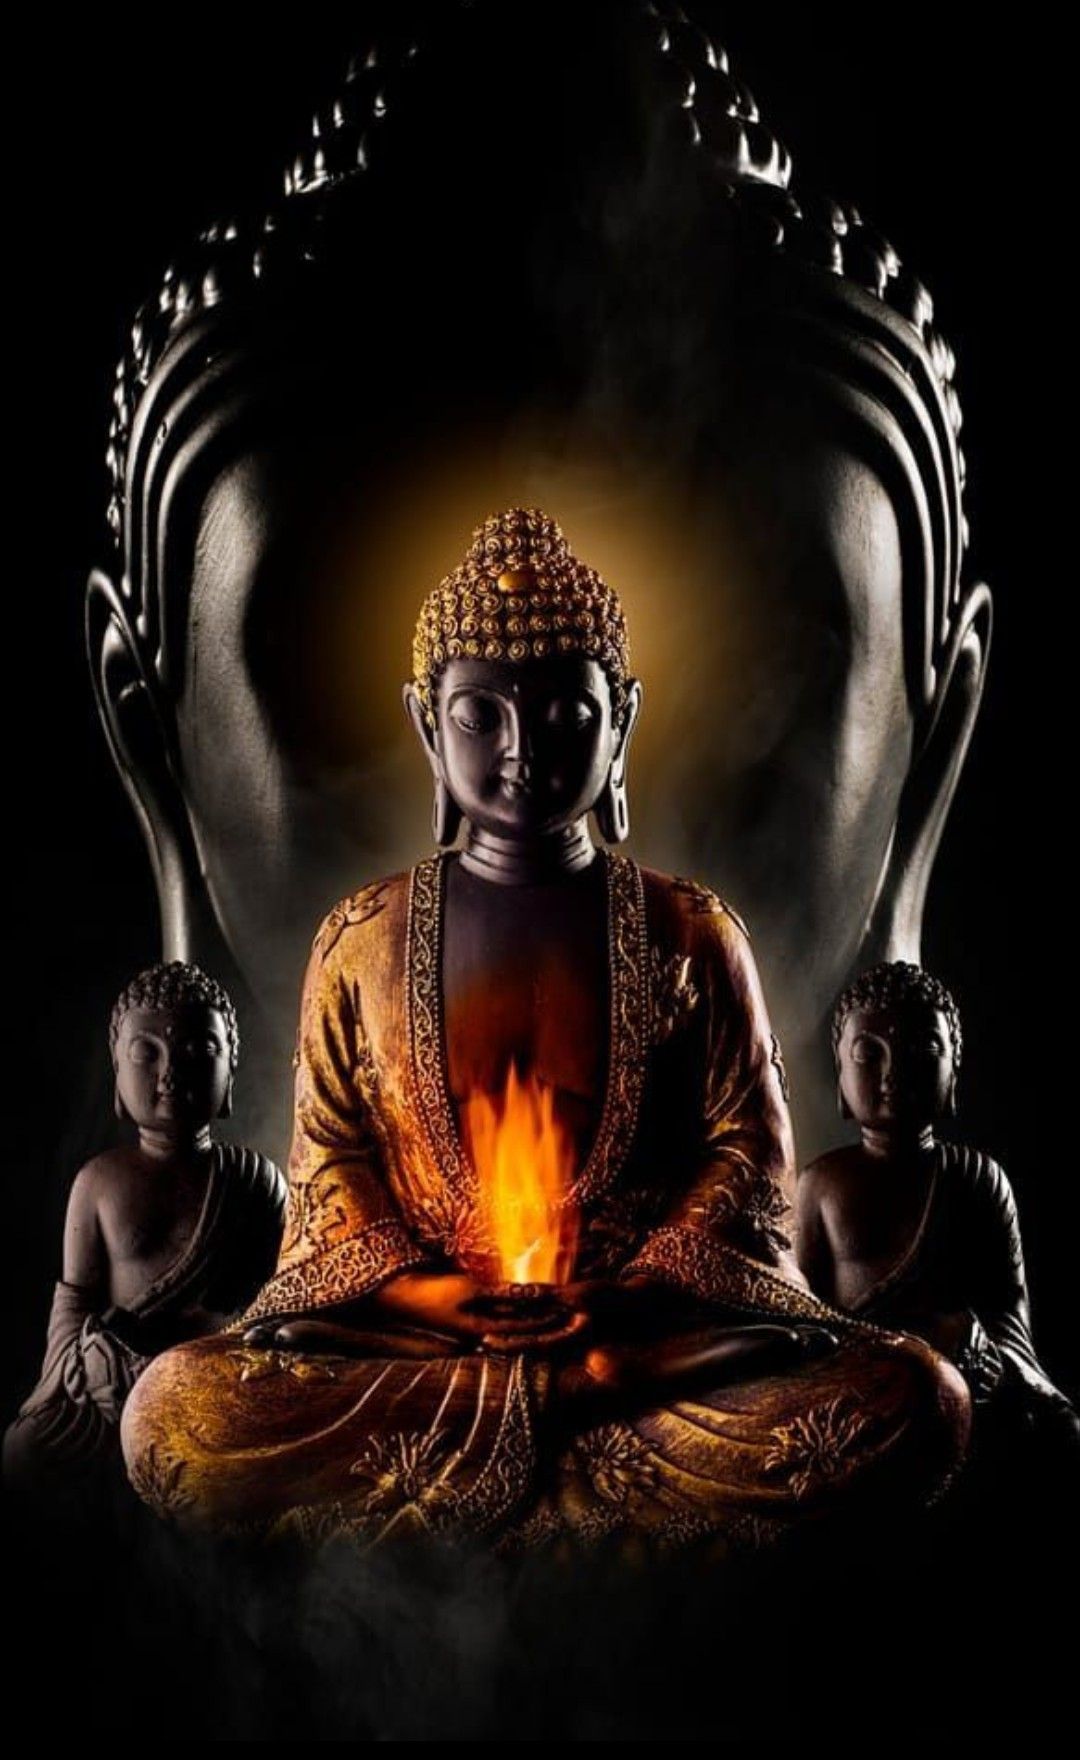 Hình Ảnh Phật Đẹp Từ Bi, Mang Tới Những May Mắn, Bình An